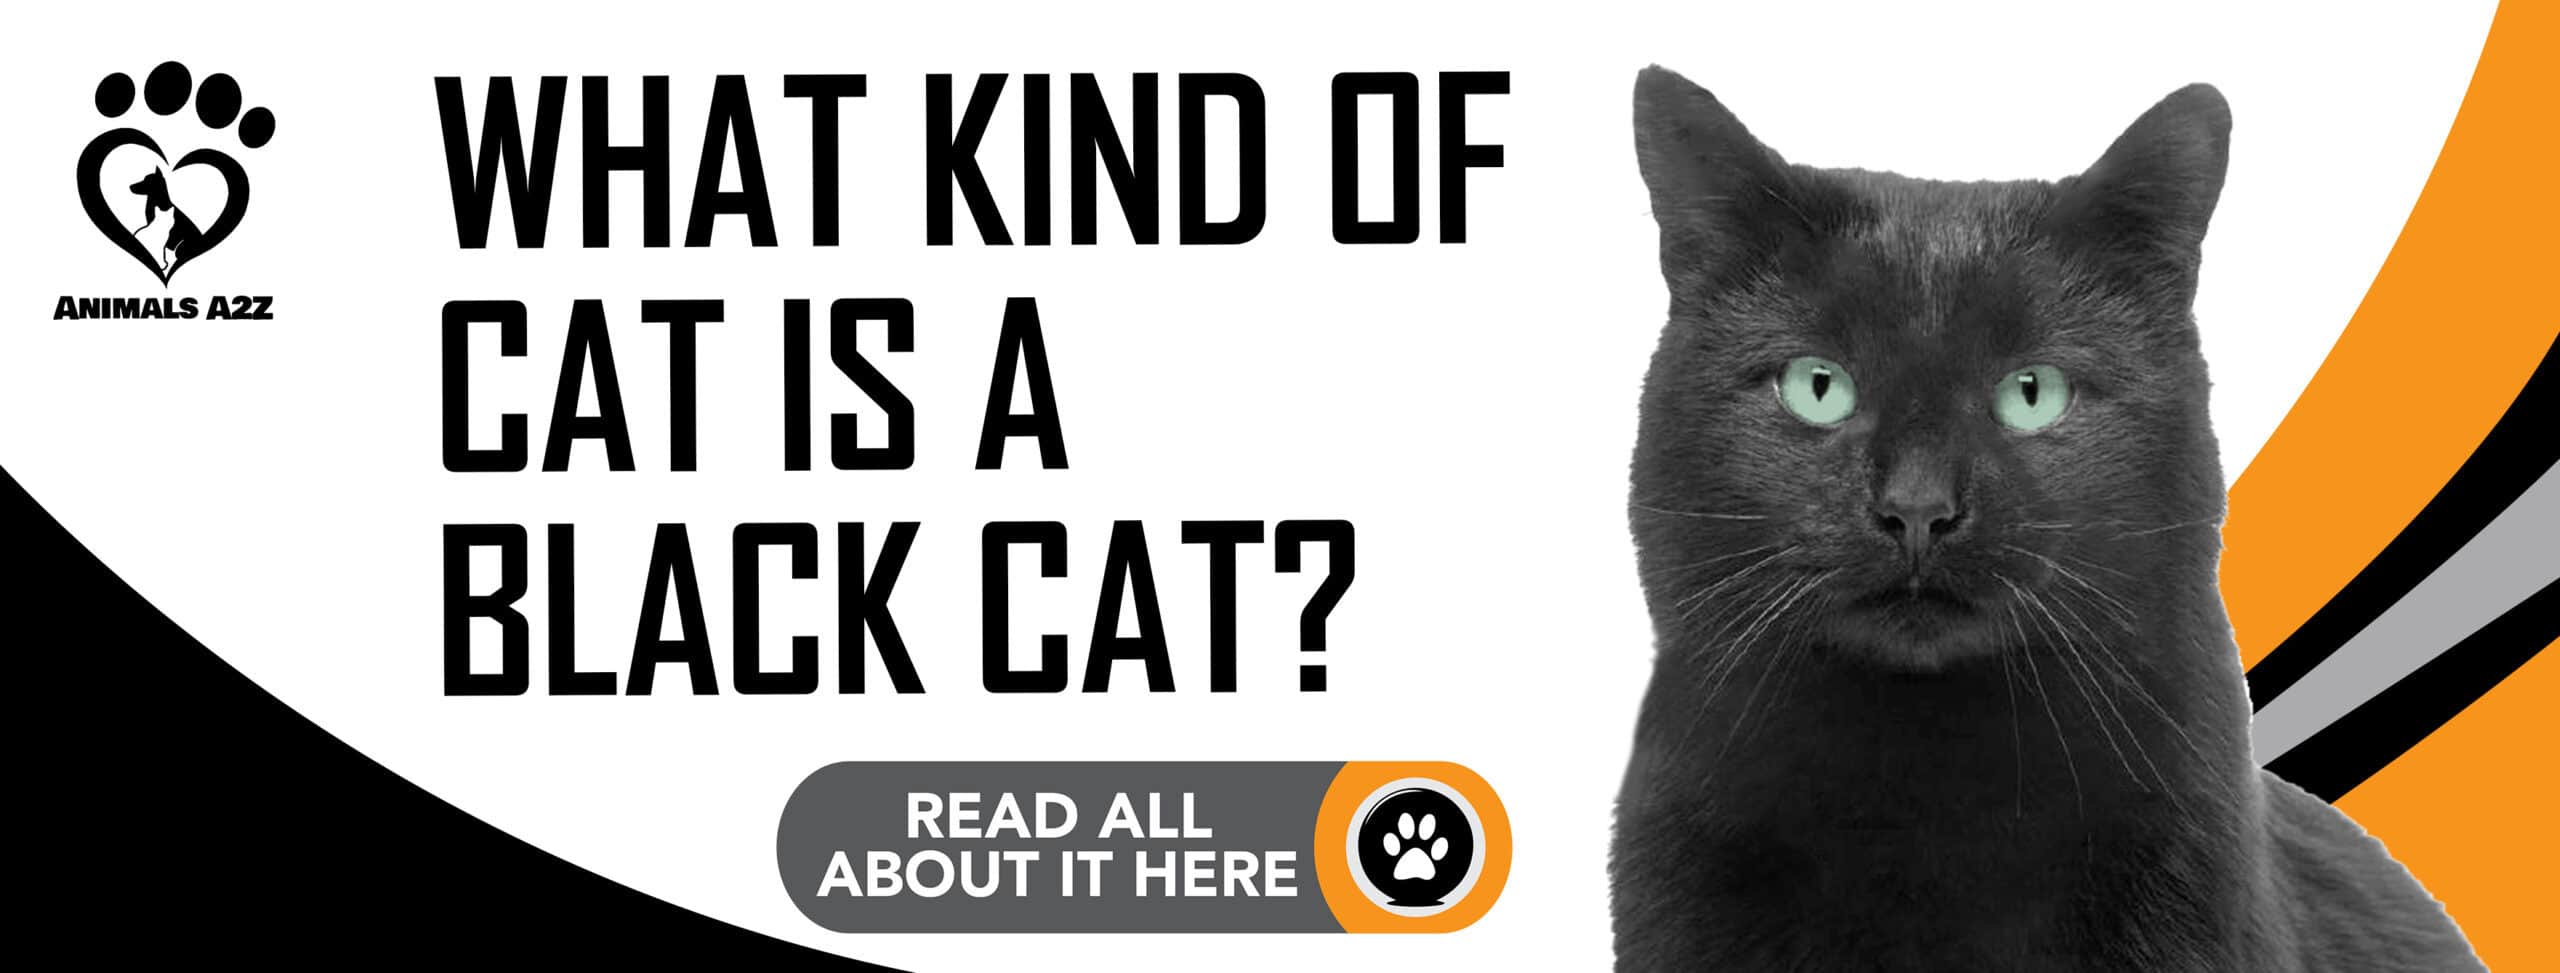 ¿Qué tipo de gato es un gato negro?